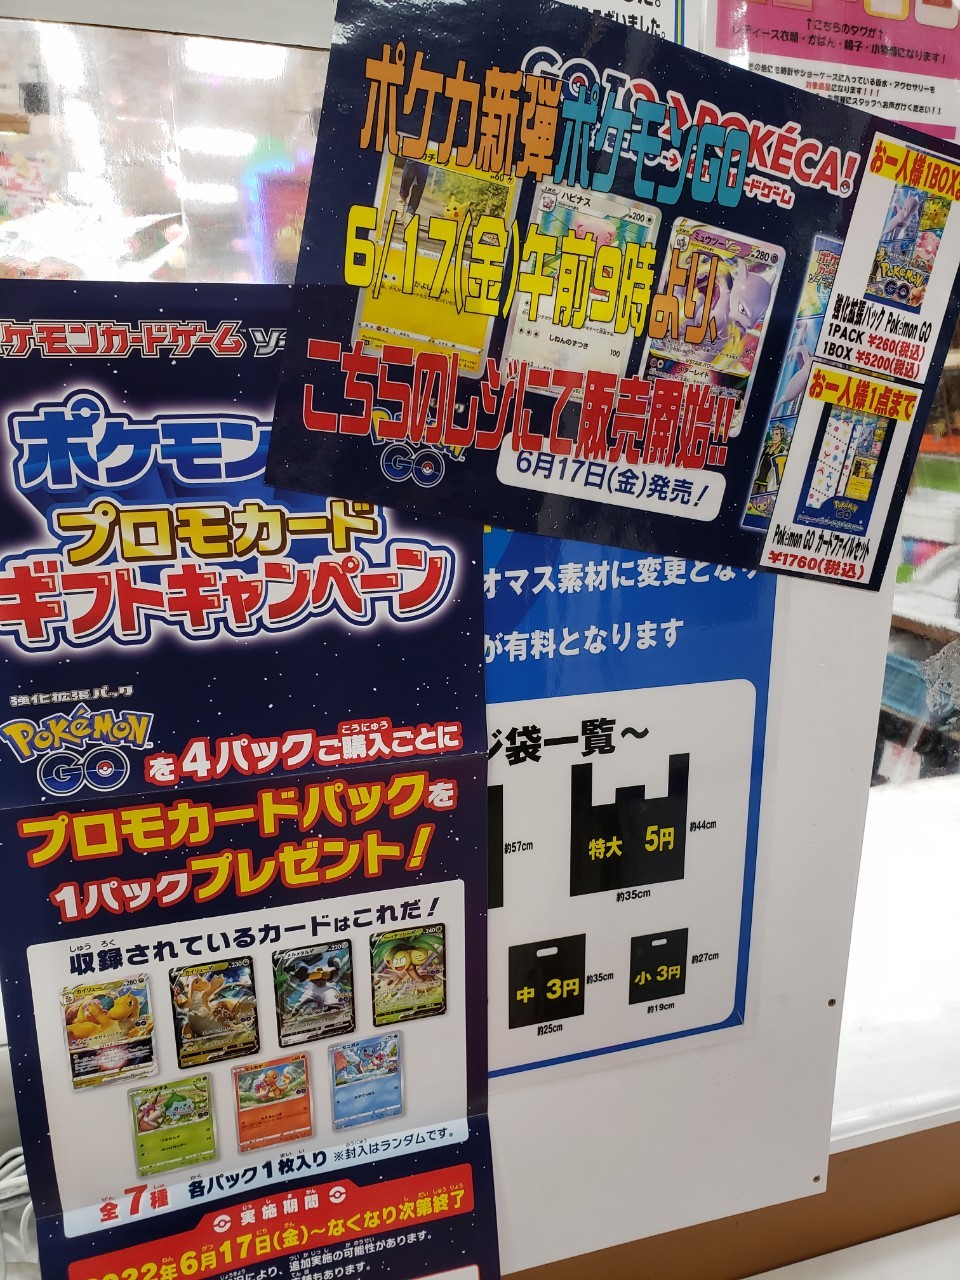 新品Pokemon GO 4BOX、カードファイルセット4個、プロモカード10枚